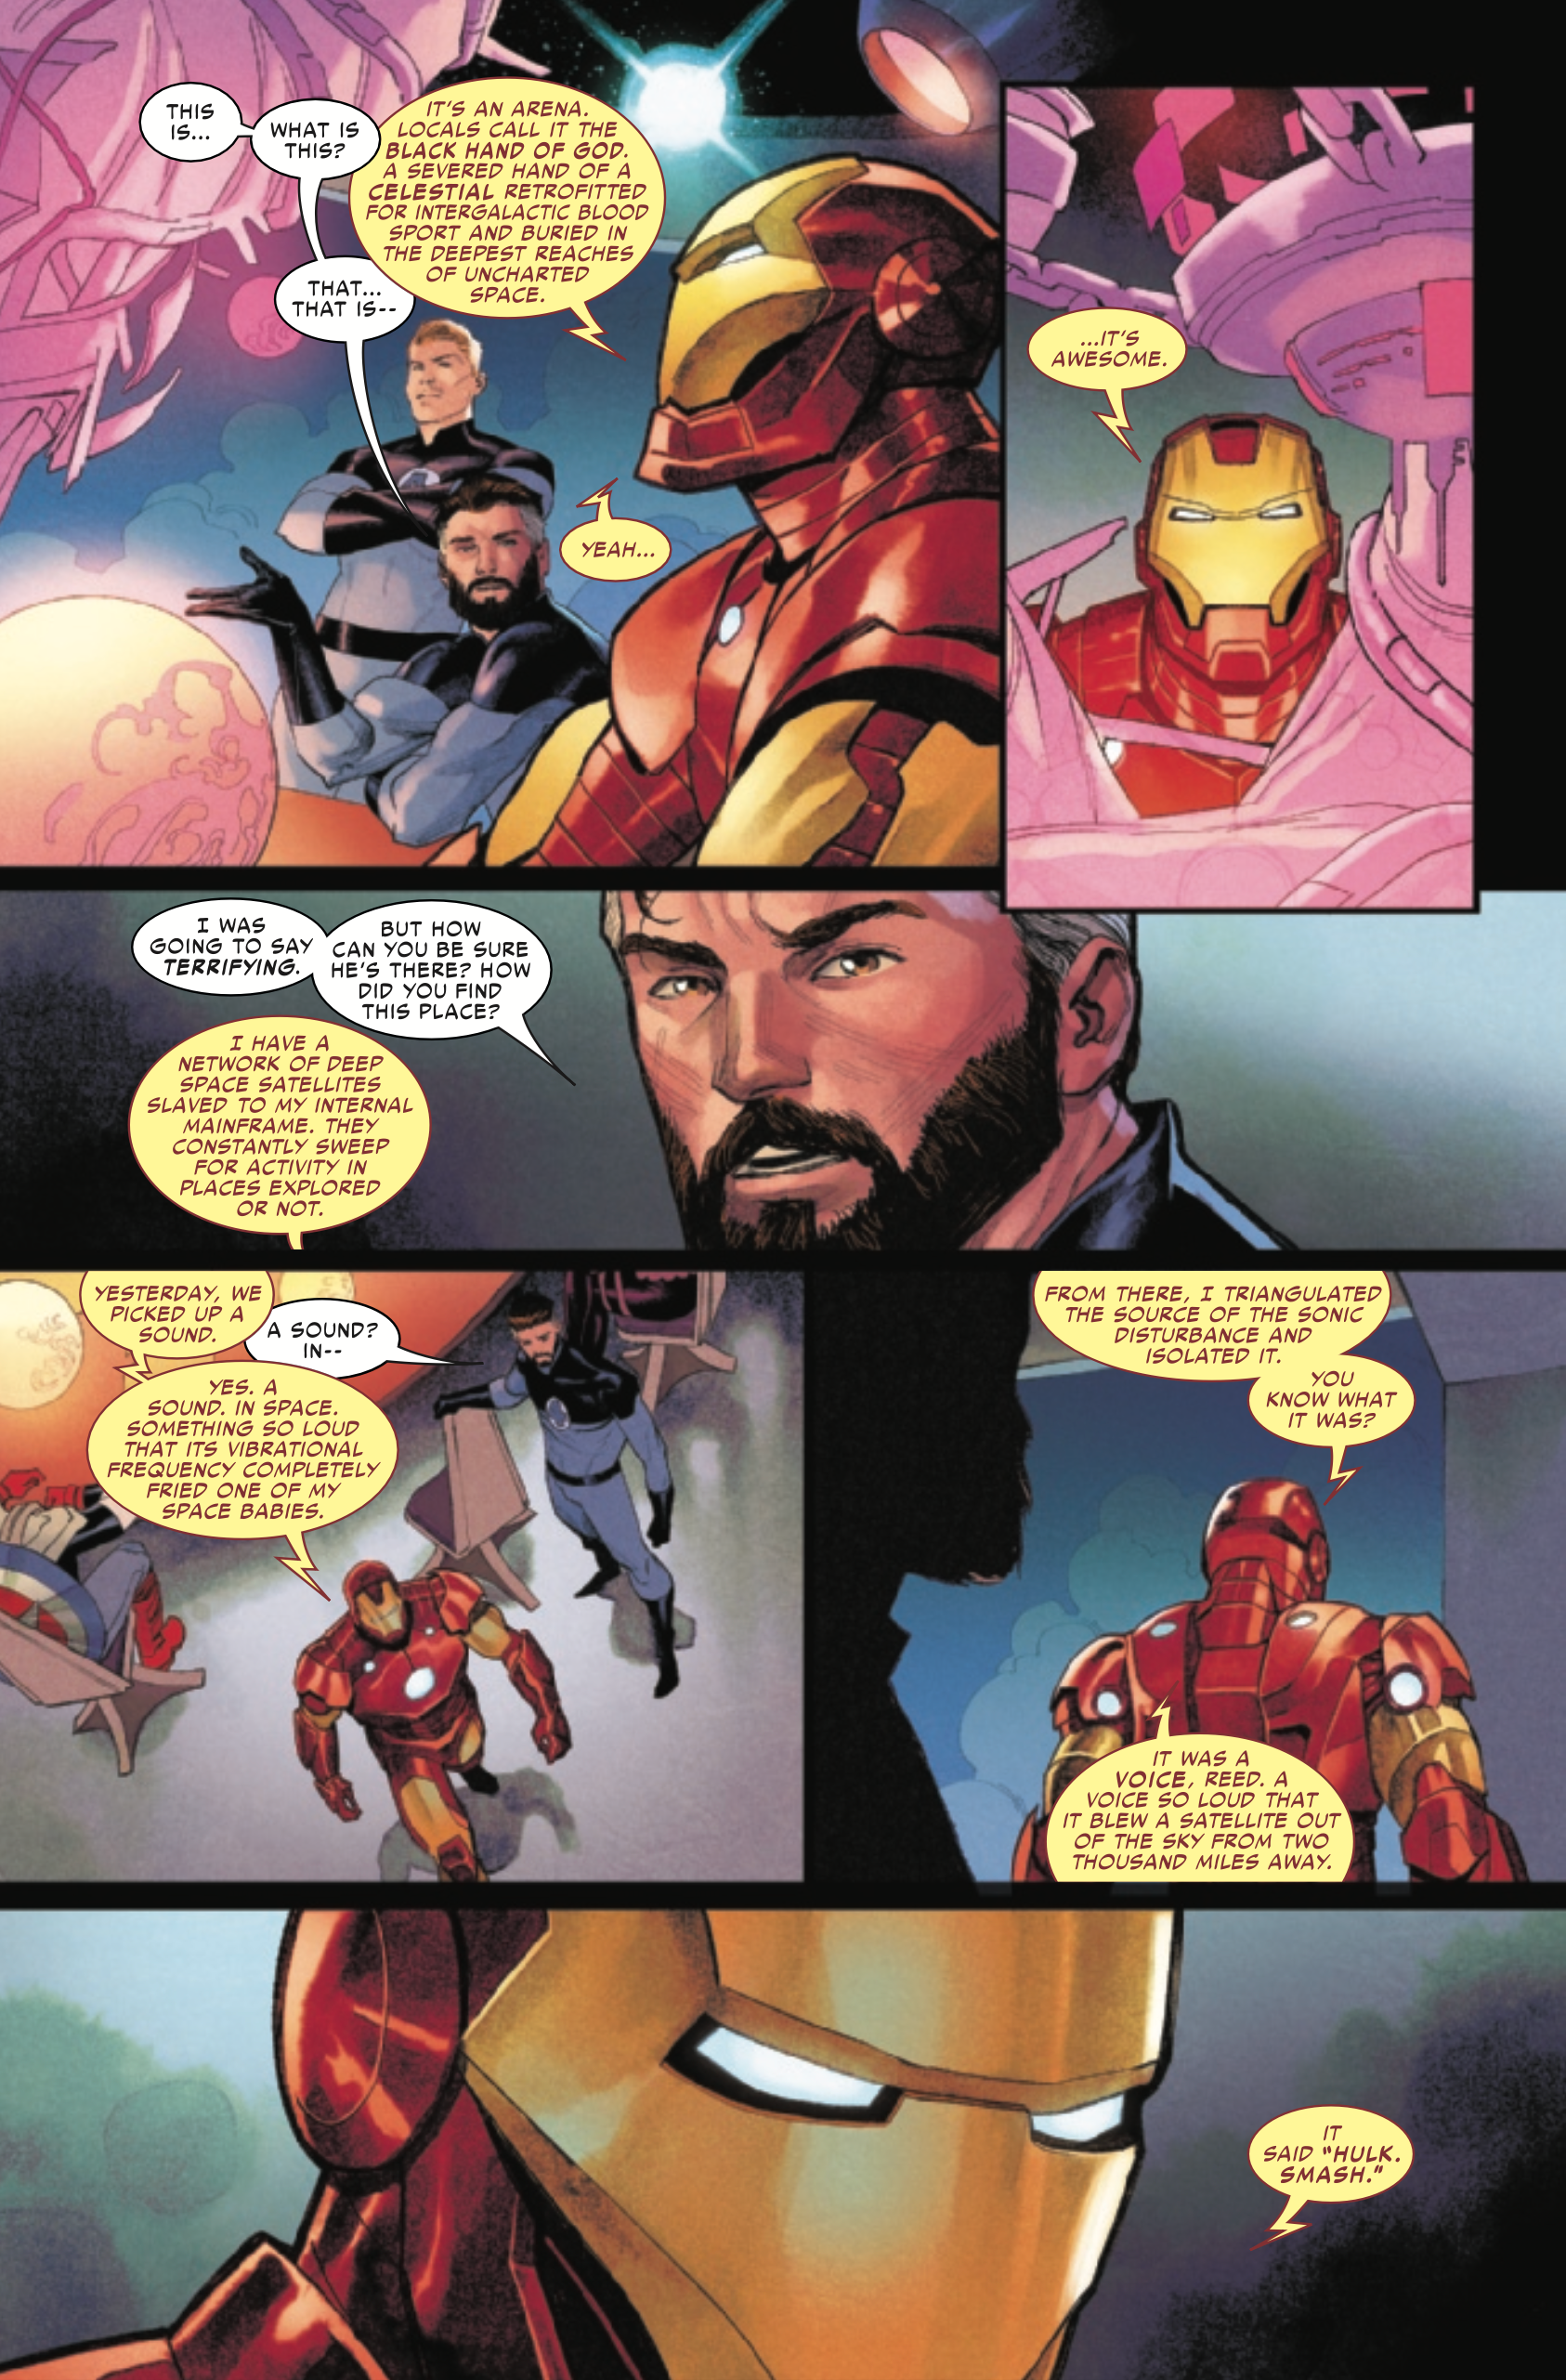 Iron Man tricks genius Reed Richards